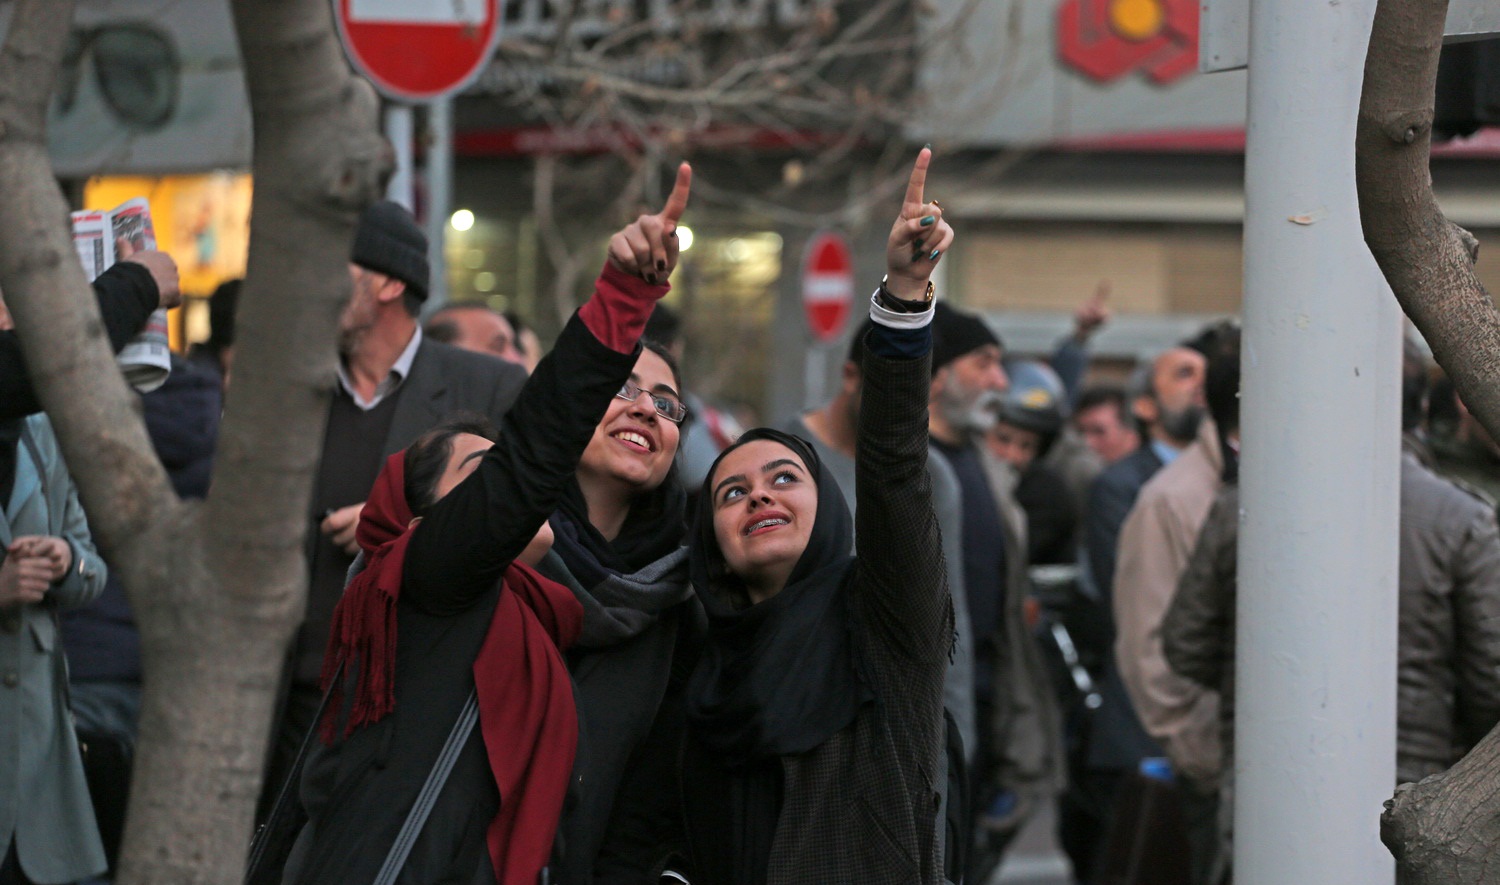 تصاویر : واکنش مردم به شلیک ضد هوایی در تهران